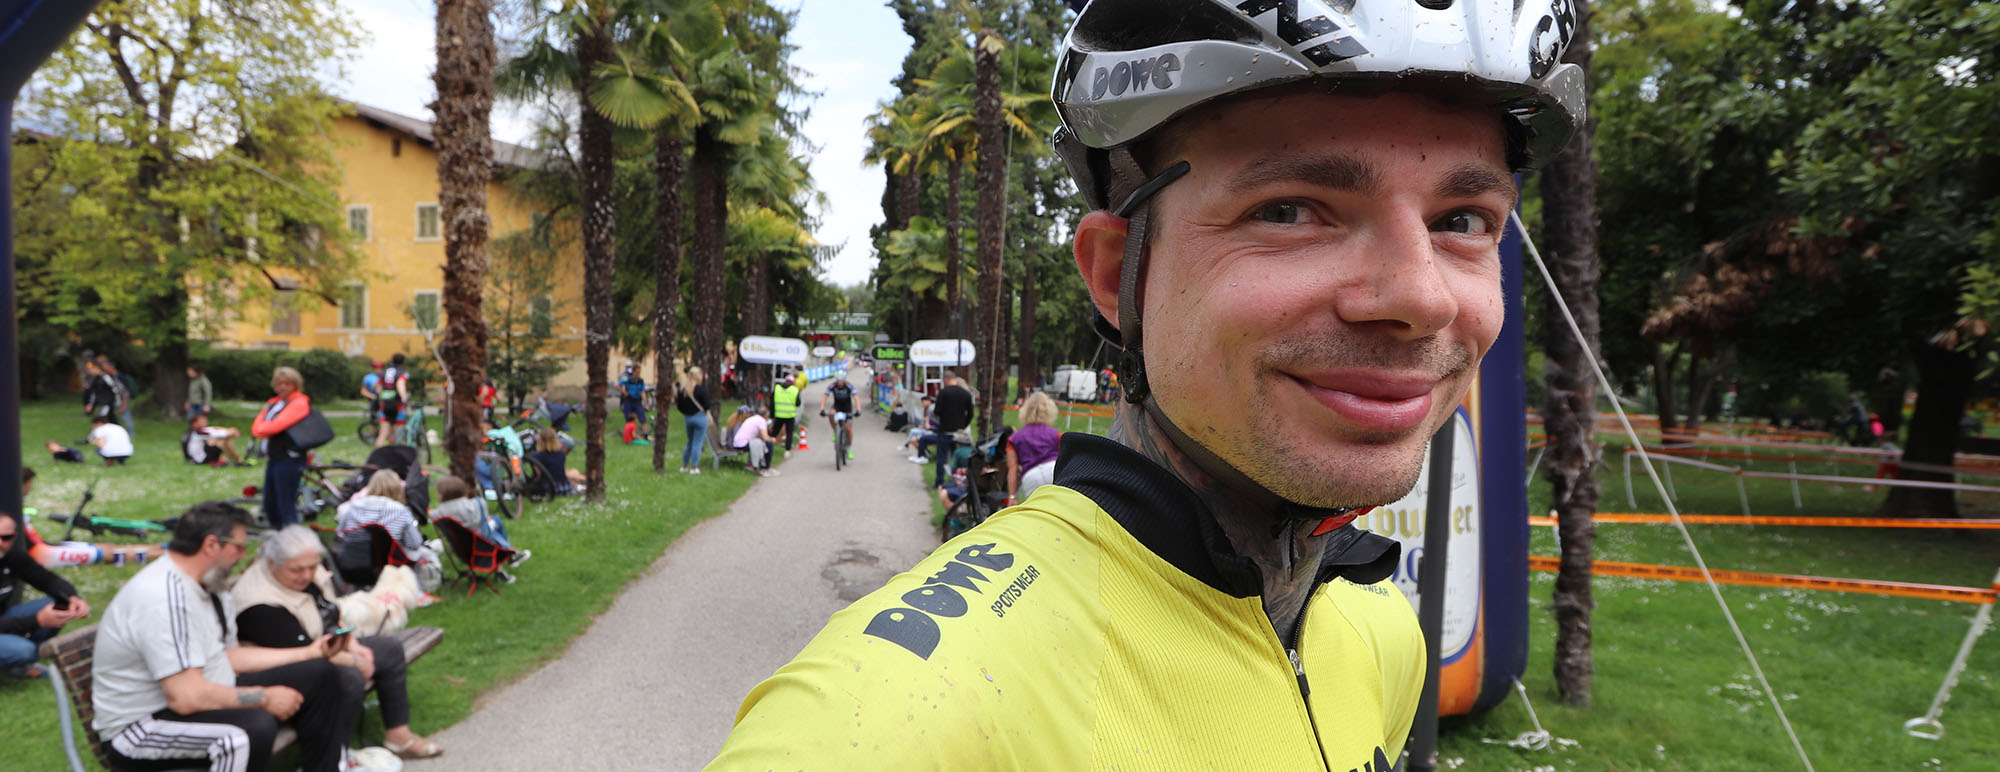 Marcus Sölter kämpft beim Bikefestival Riva